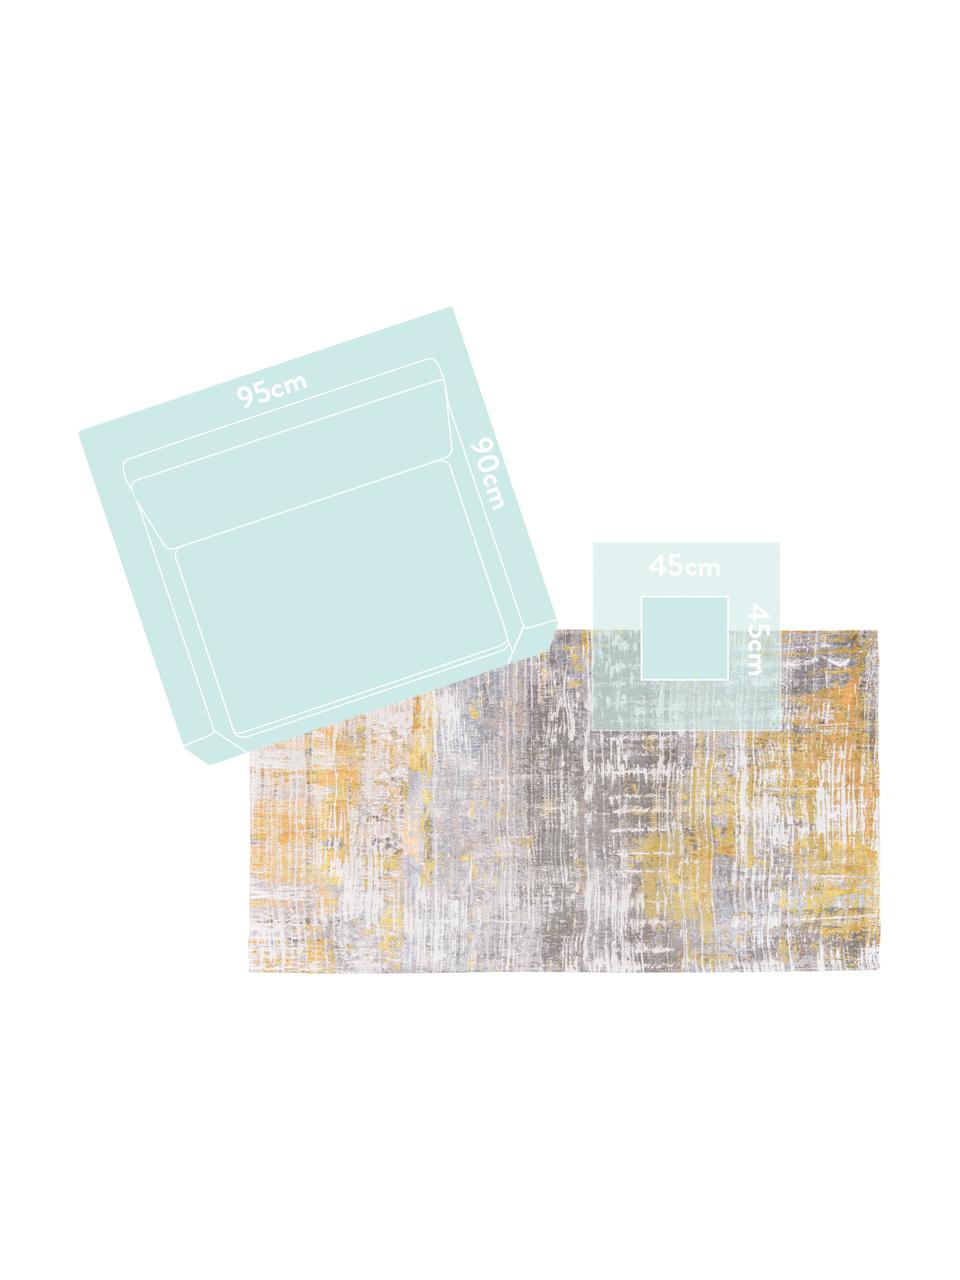 Tappeto di design grigio/giallo Streaks, Tessuto: Jacquard, Retro: Miscela di cotone, rivest, Giallo, grigio, bianco, Larg. 140 x Lung. 200 cm (taglia S)